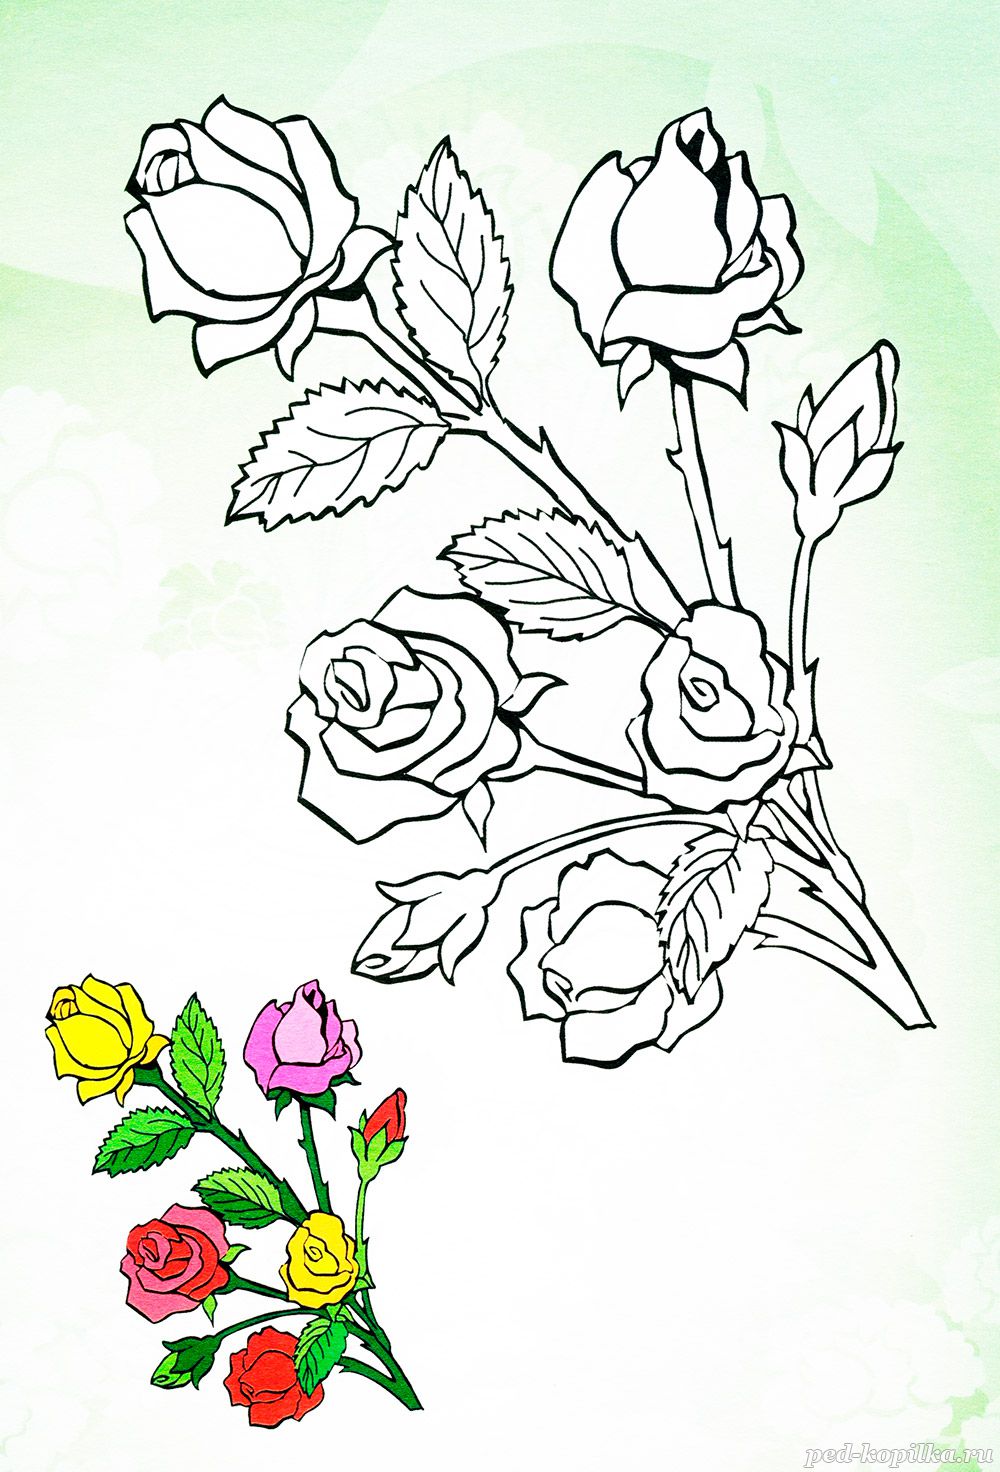 Розы. Раскраски для детей на тему розы. Раскраски на тему окружающий мир для детей. Раскраски с розами, раскраски розы, скачать раскраски с розами.                    